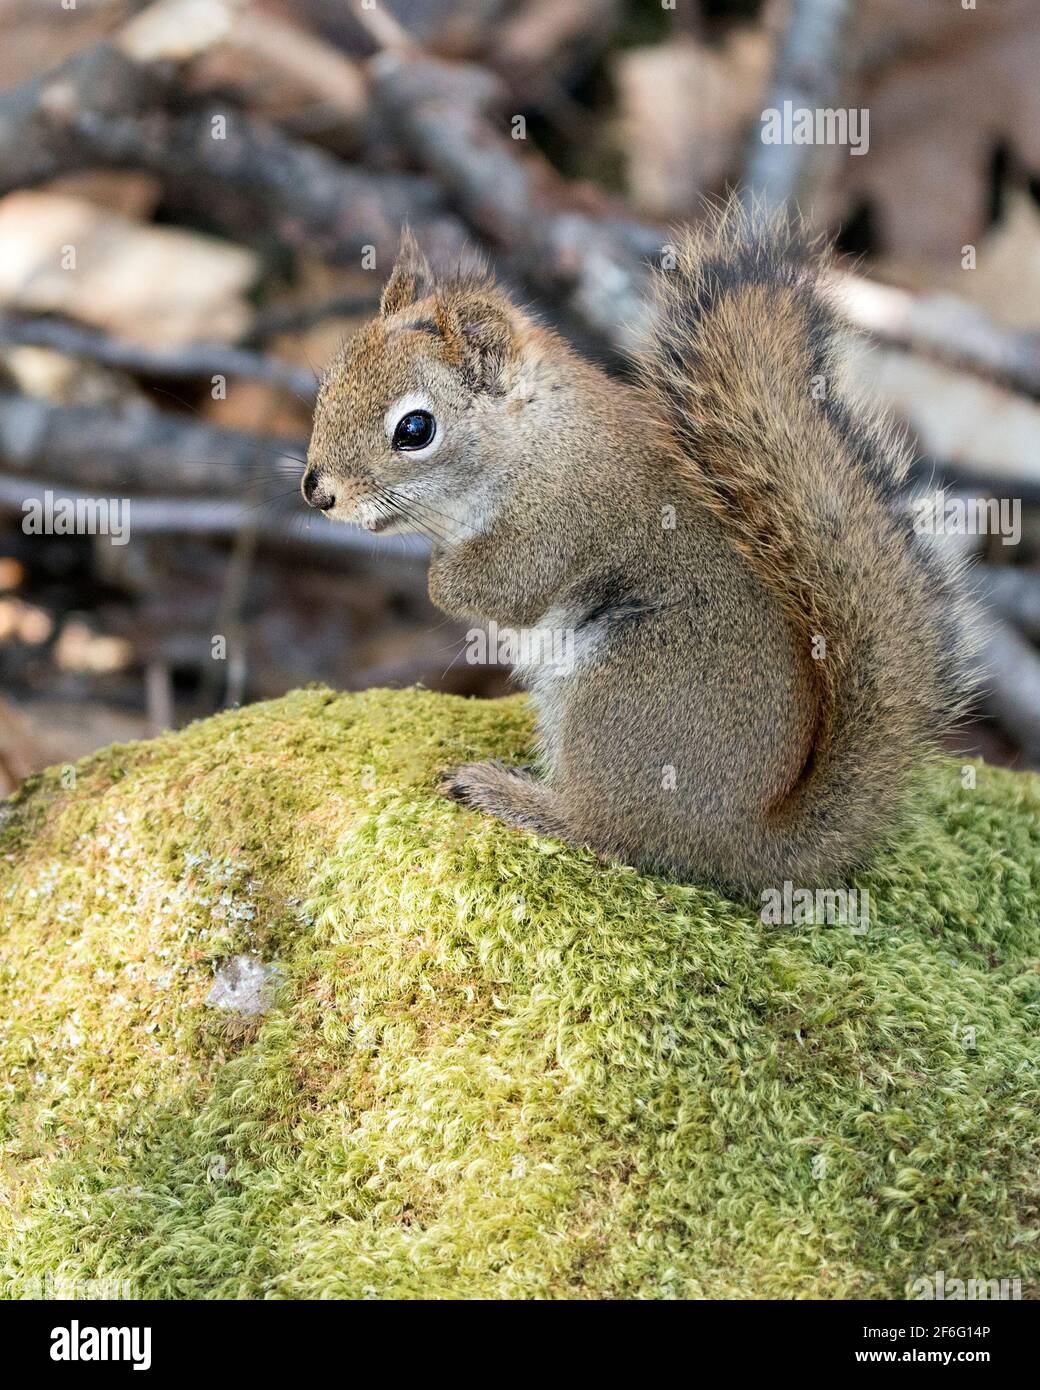 Nahaufnahme des Eichhörnchen-Profils, das auf einem Moosfelsen im Wald sitzt und buschigen Schwanz, braunes Fell, Nase, Augen und Pfoten mit einem unscharfen Felshintergrund zeigt. Stockfoto